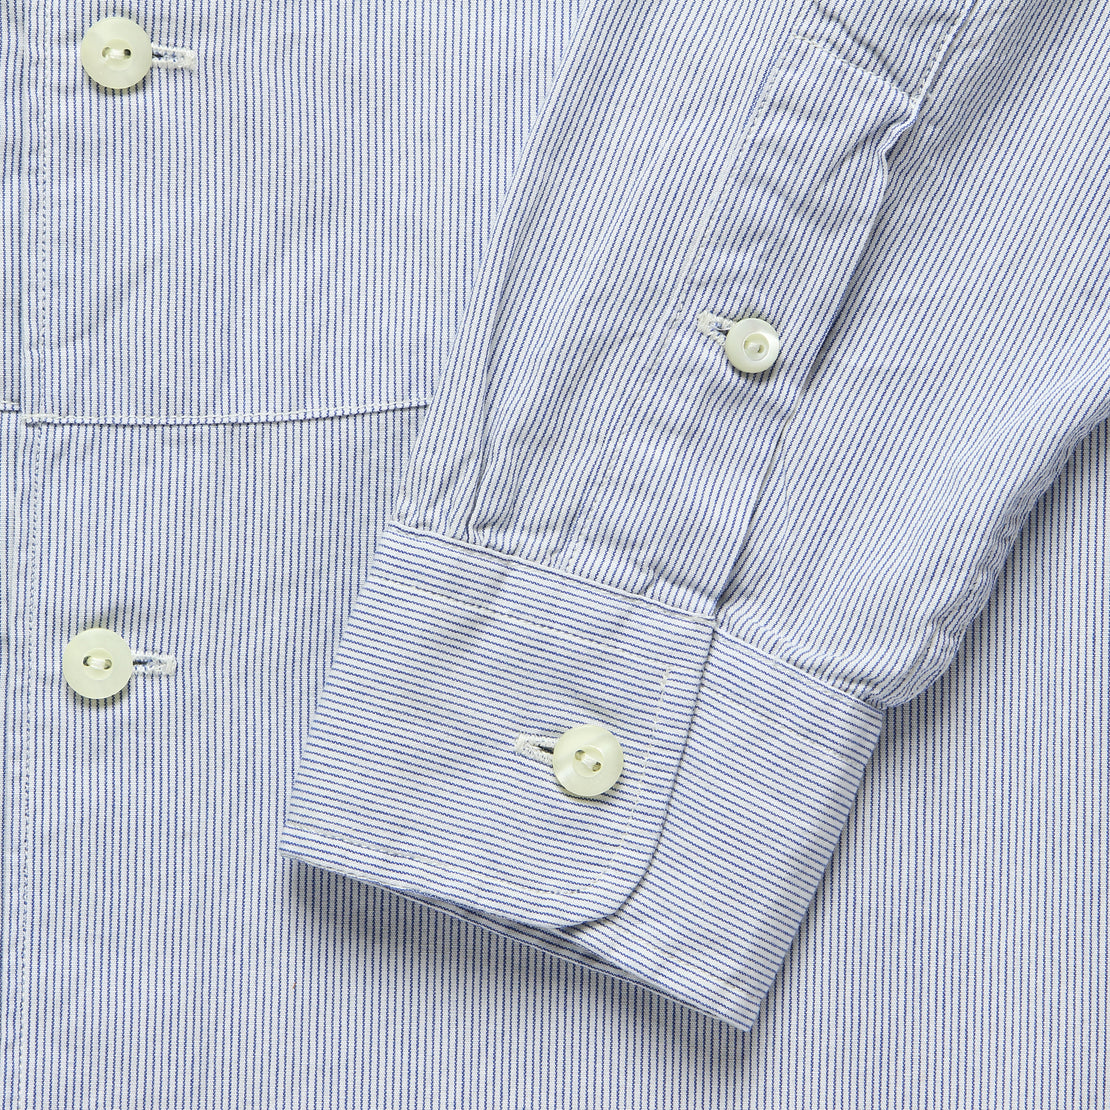 Michelle Bib Shirt - Blue/White Stripe - RRL - STAG Provisions - W - Tops - L/S Woven